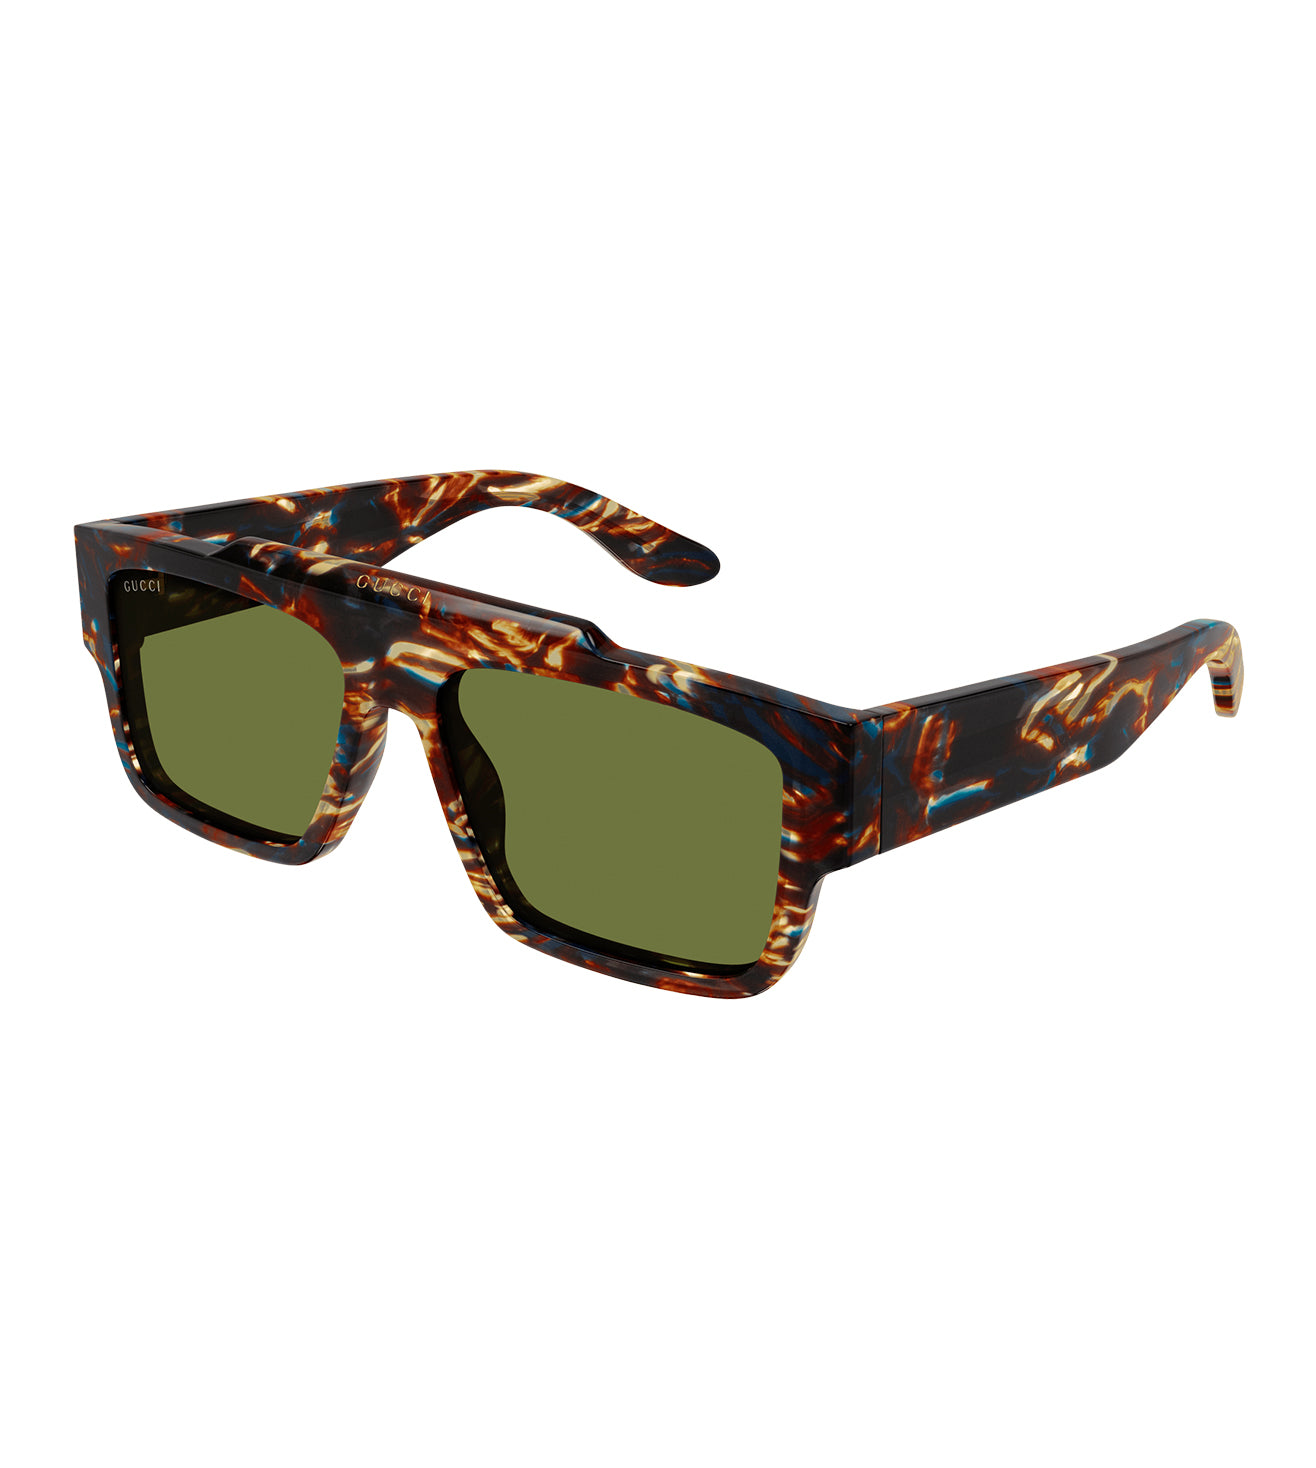 Gucci Men's Green Square Sunglasses